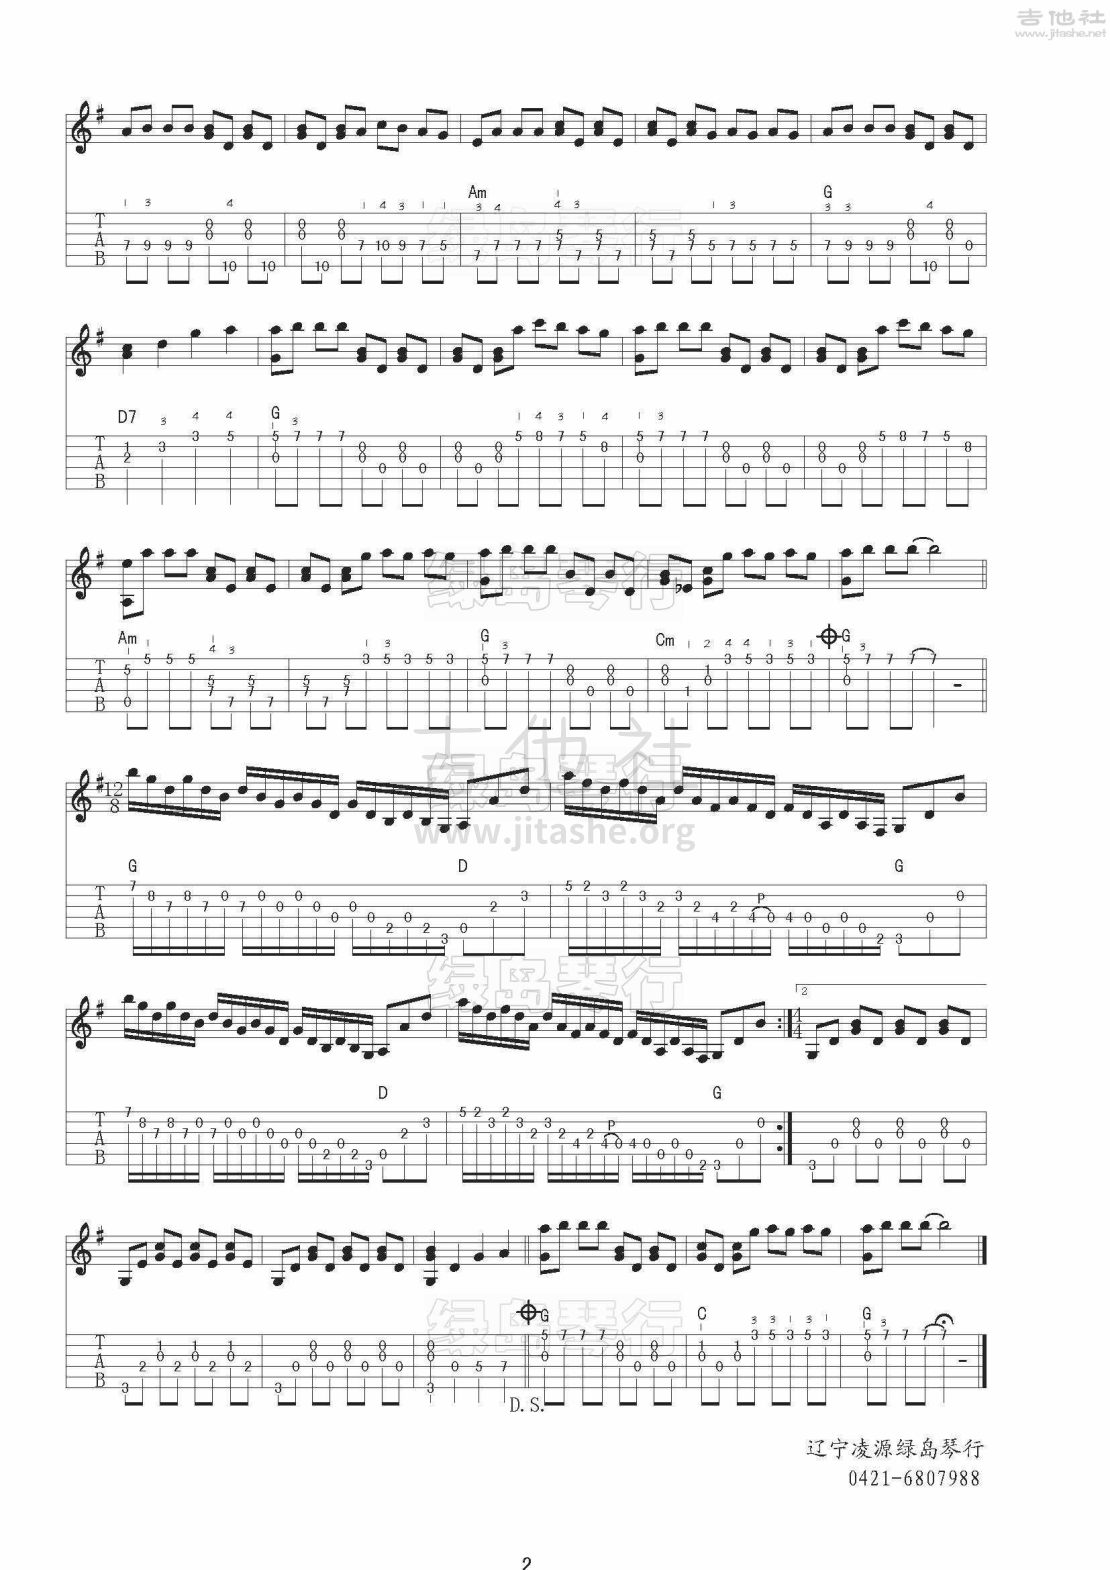 打印:童年的回忆吉他谱_Richard Clayderman(理查德·克莱德曼)_理查德·克莱德曼_童年的回忆_2.jpg